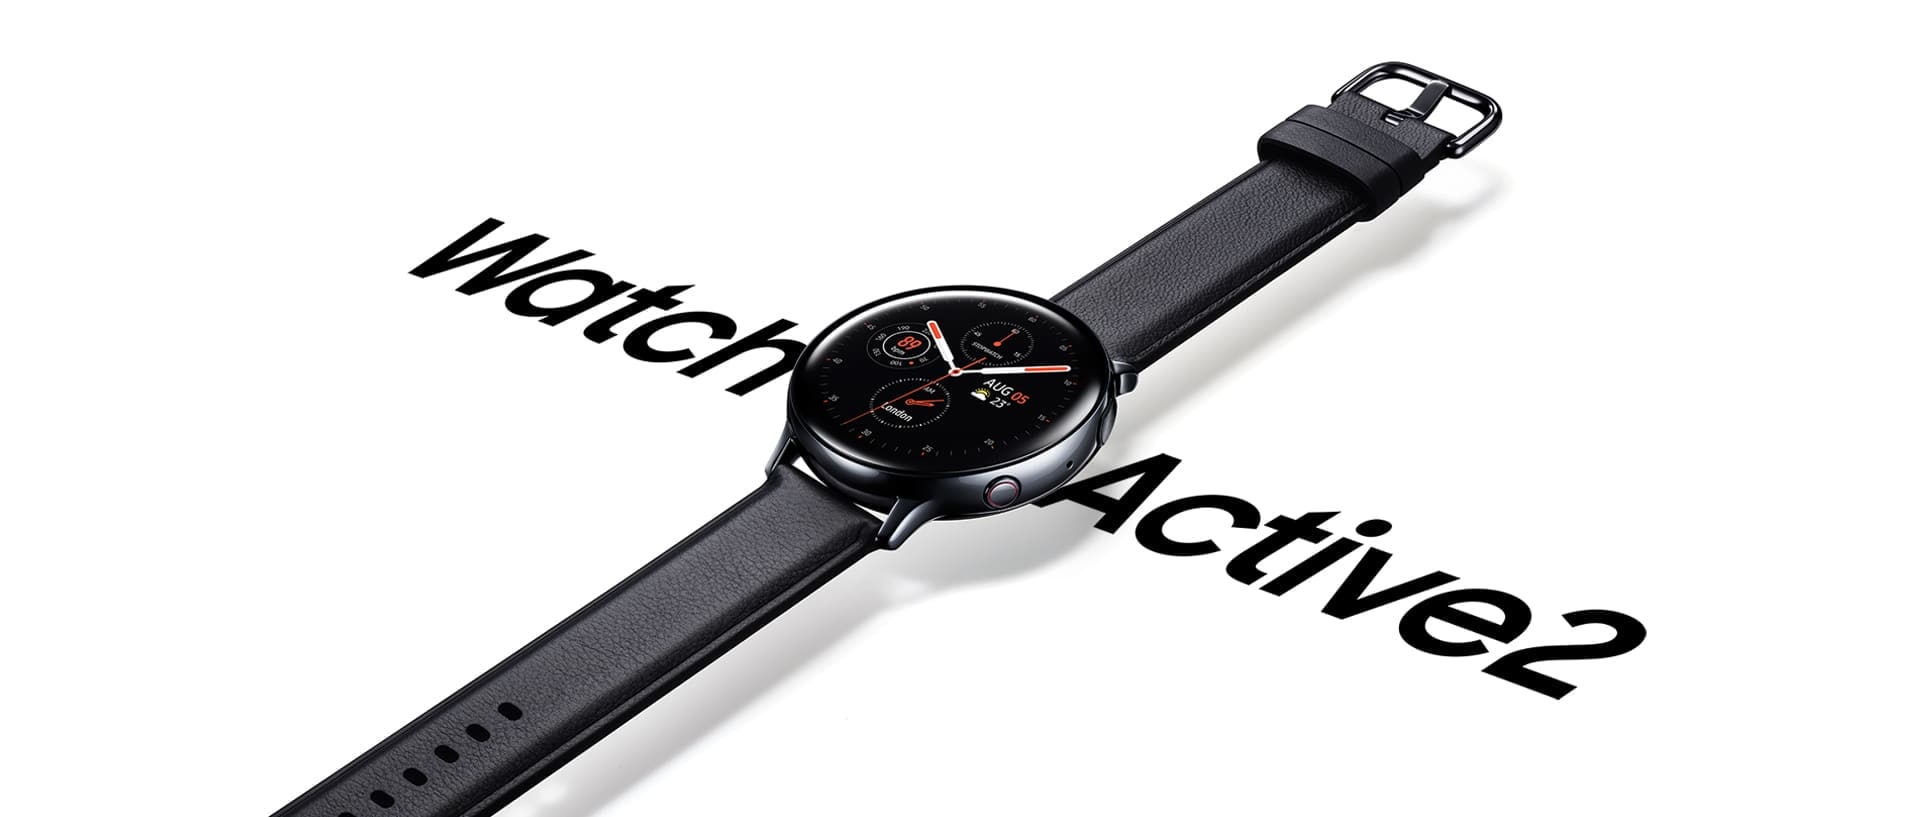 Musta Galaxy Watch Active2 ruostumattomasta teräksestä ja mustalla nahkahihnalla. Kello riippuu suurikokoisen 'Watch Active 2’-tekstin päällä.